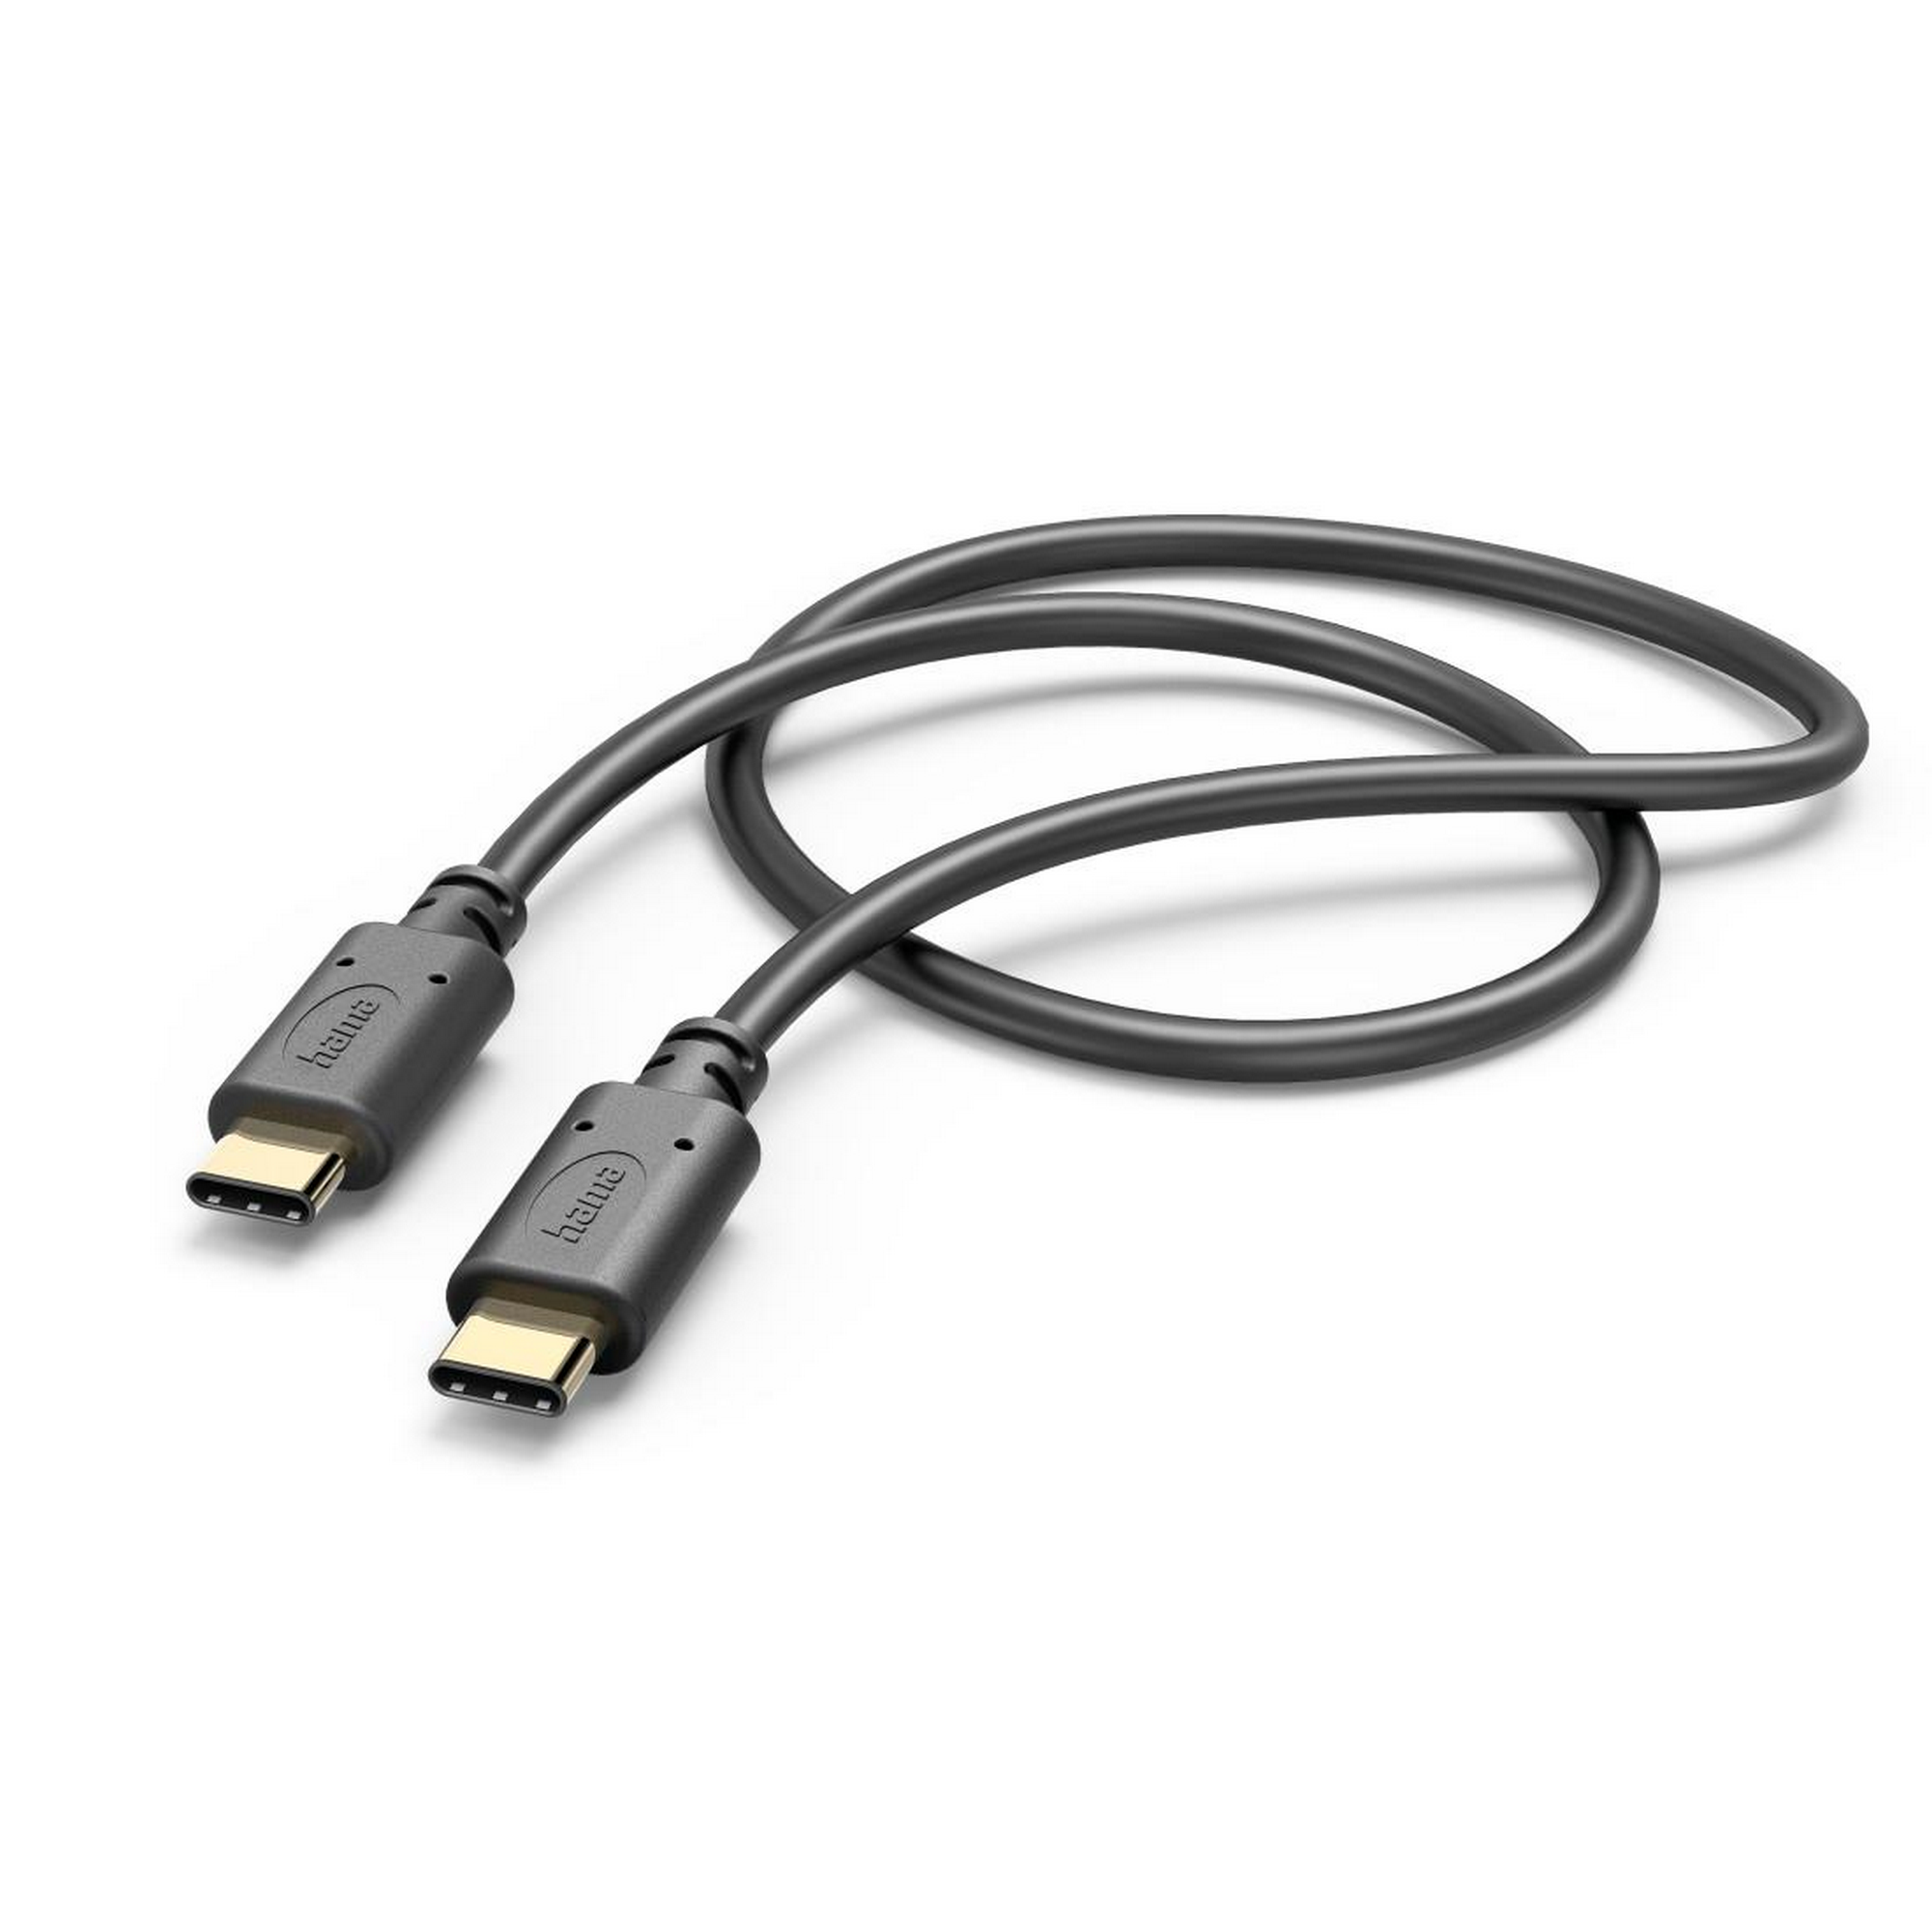 Ladekabel schwarz USB-C mit USB-C 1,5 m + product picture